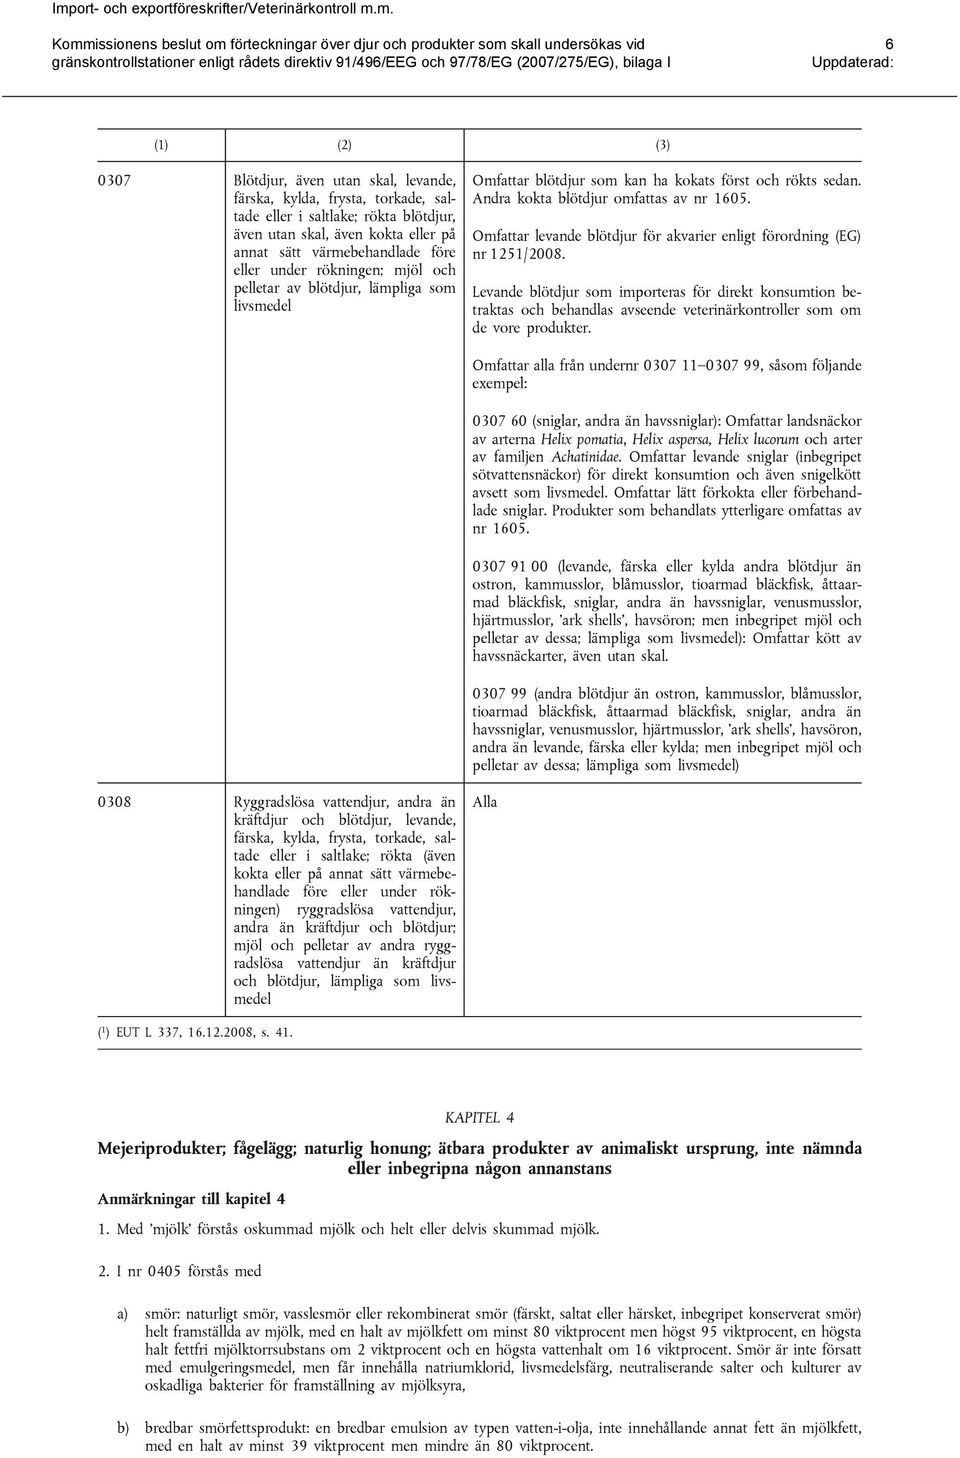 Omfattar levande blötdjur för akvarier enligt förordning (EG) nr 1251/2008.